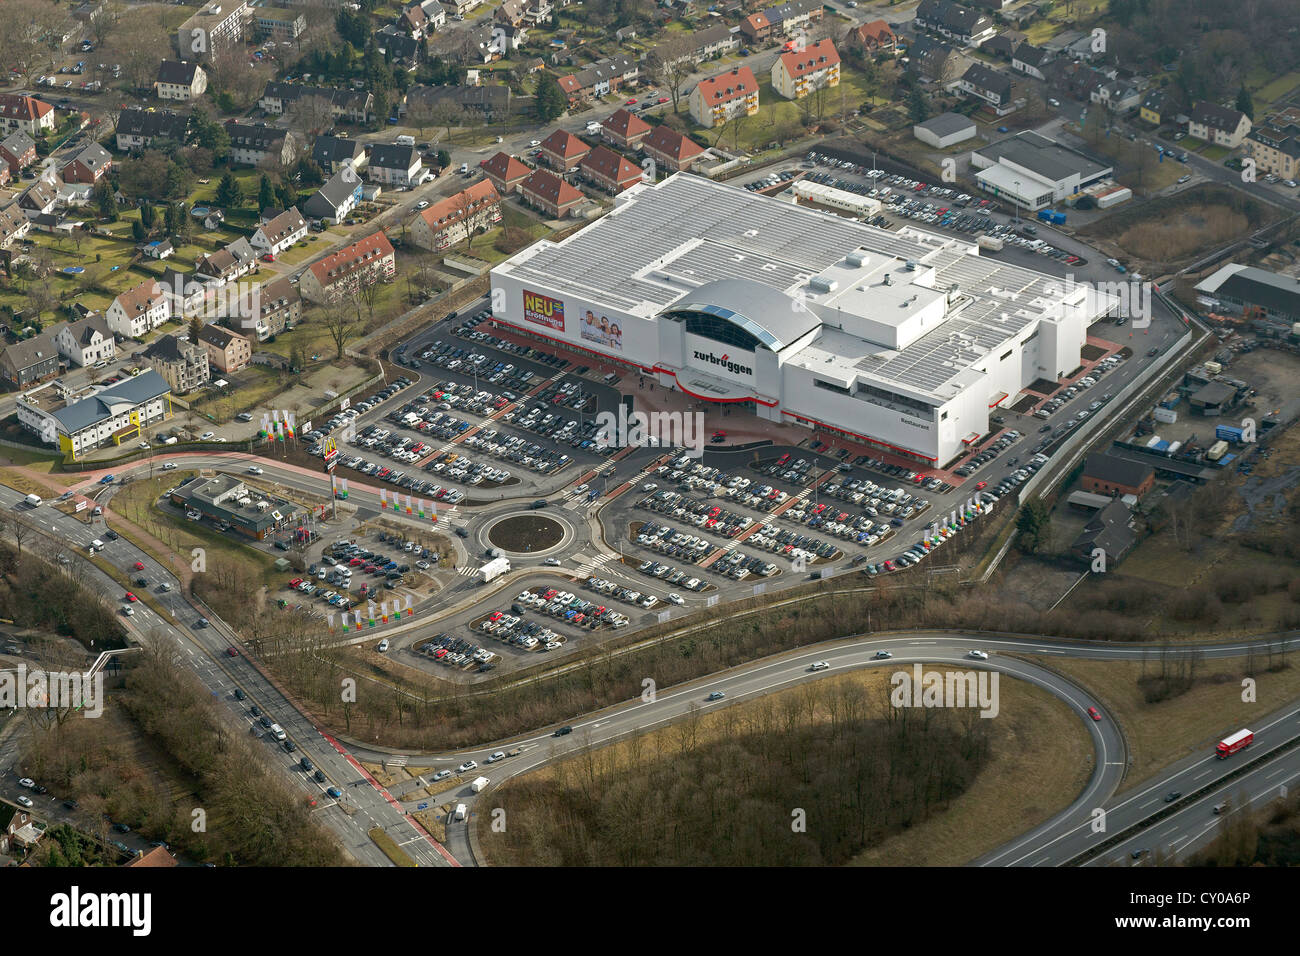 Vista aérea, nueva ubicación de la empresa de muebles Zurbrueggen, mueblería, aparcamiento, Herne, área de Ruhr Foto de stock